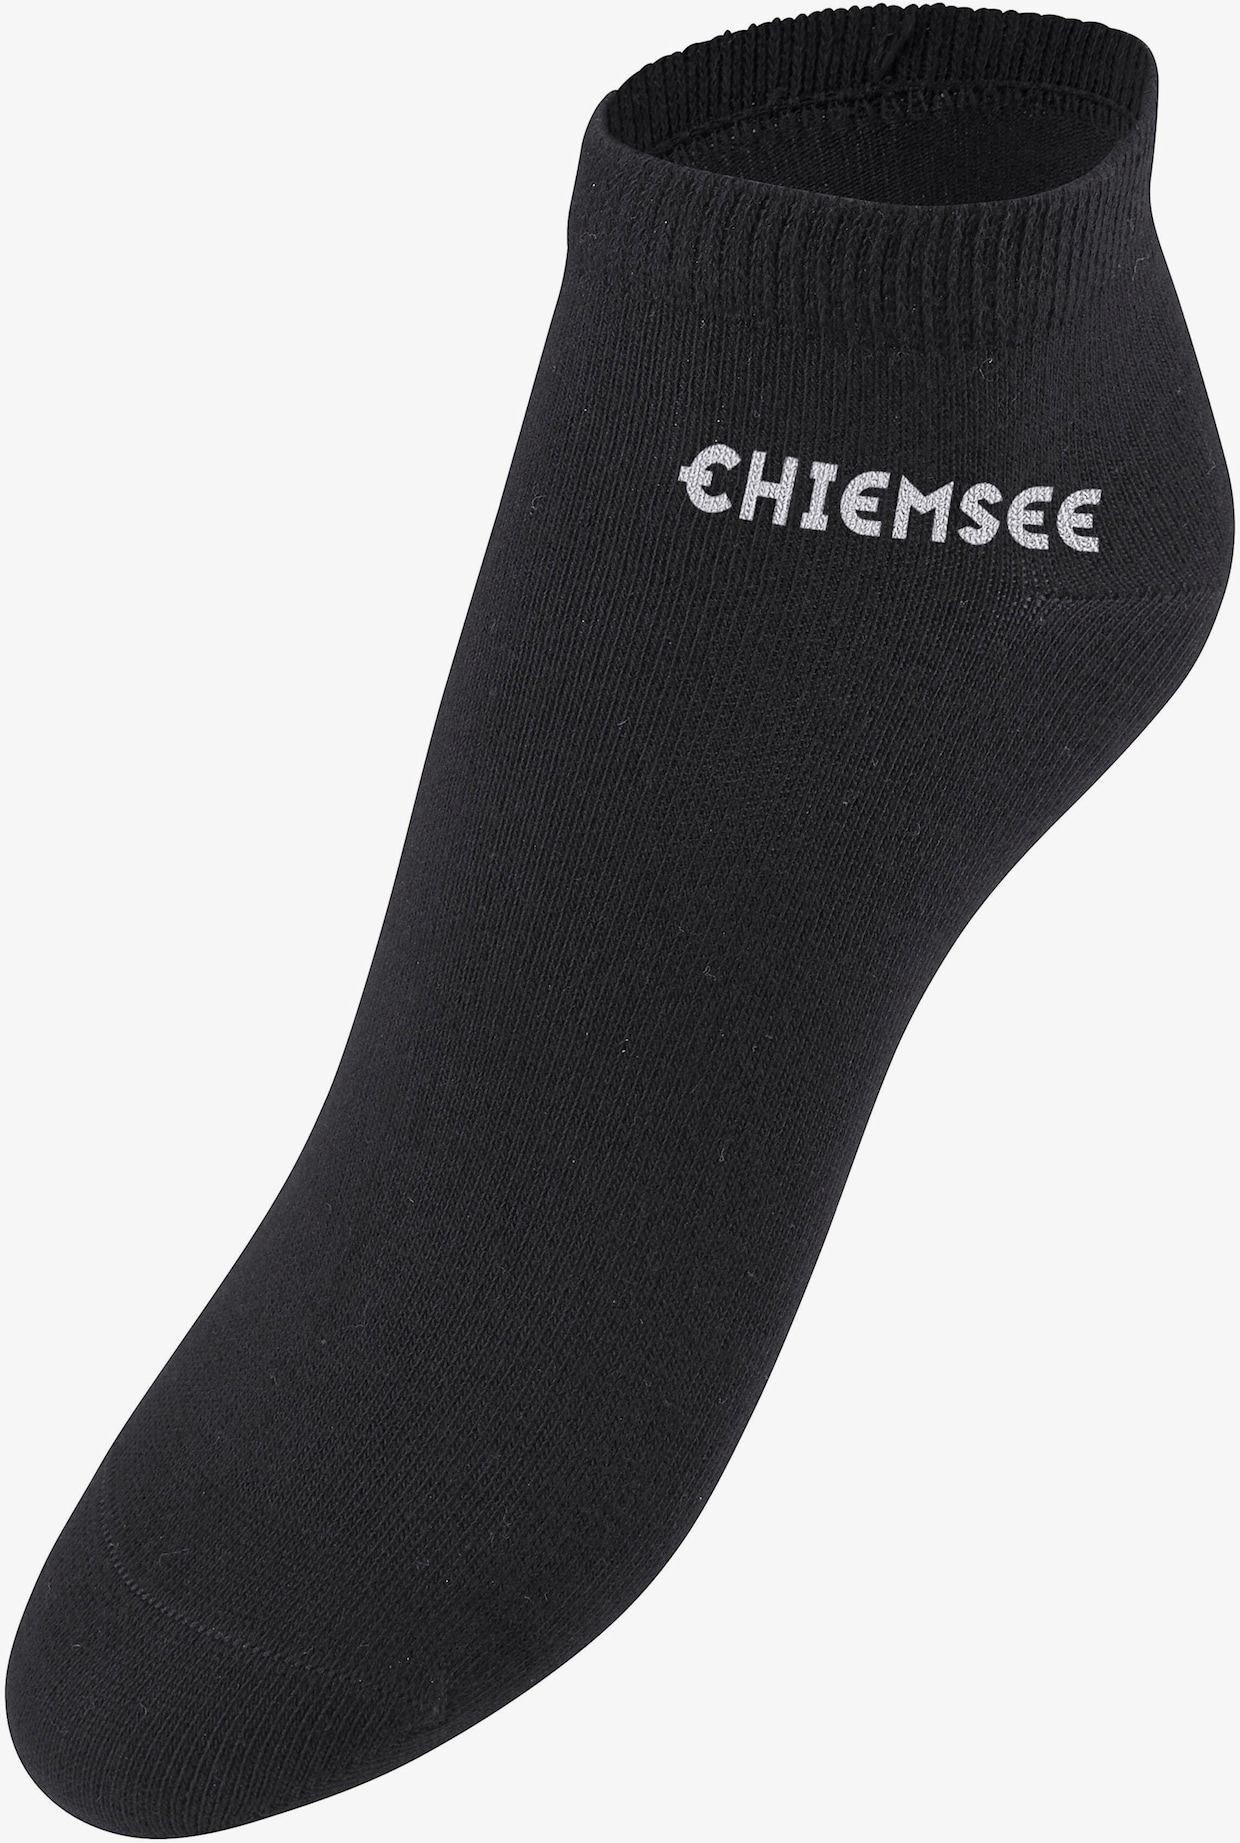 Chiemsee Socquettes - noir